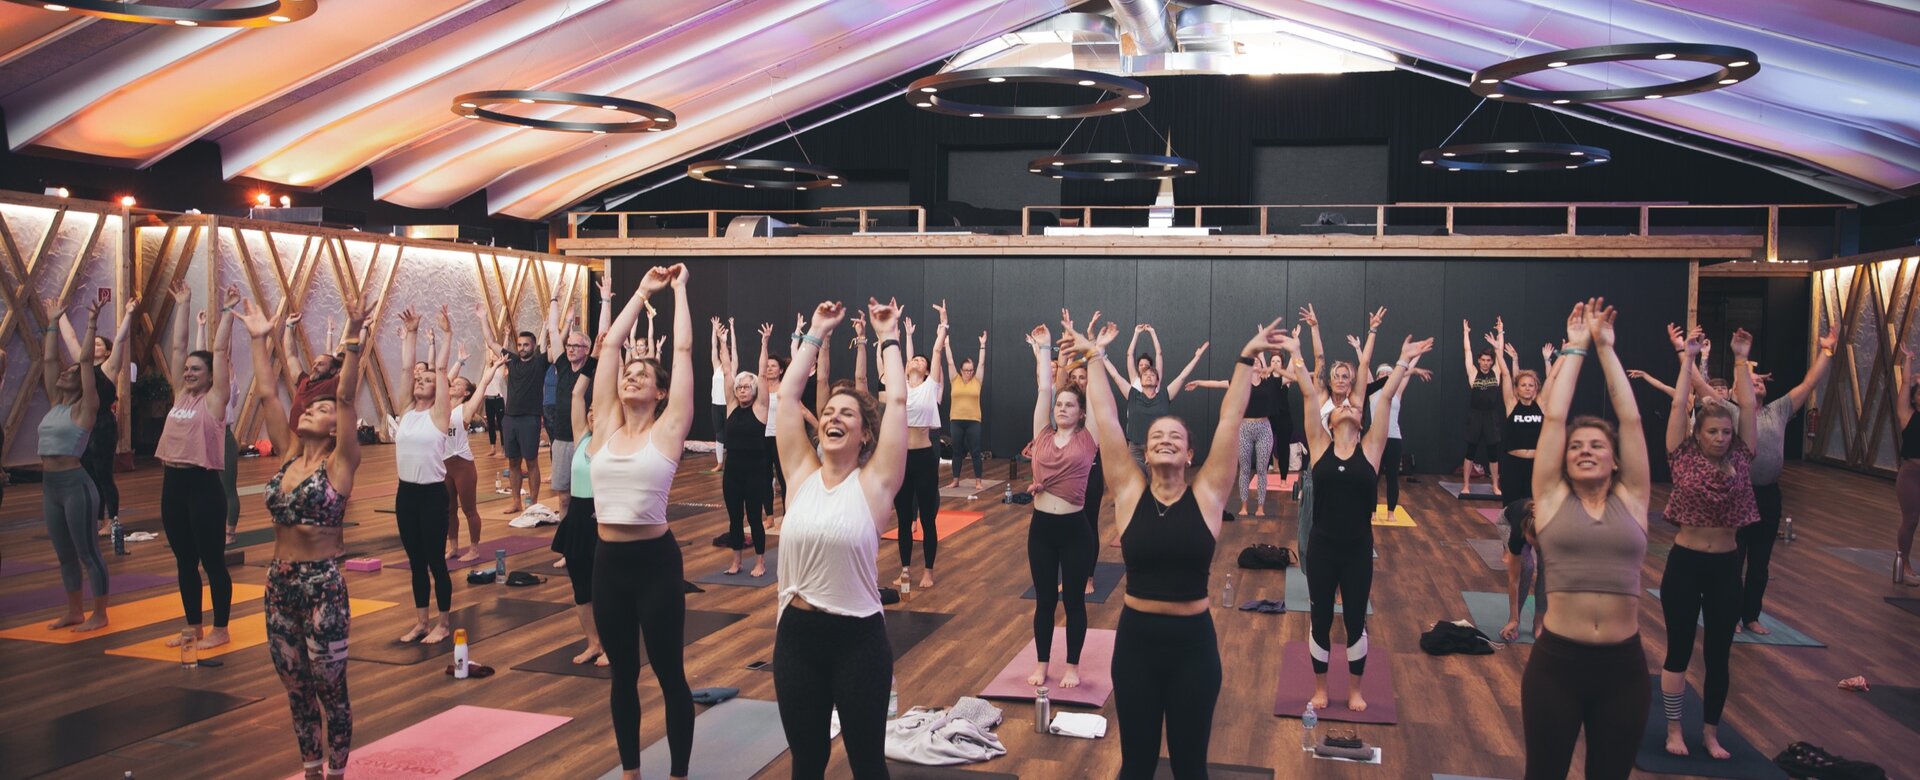 Viele Teilnehmer strecken ihre Hände während einer Yoga-Pose in die Höhe